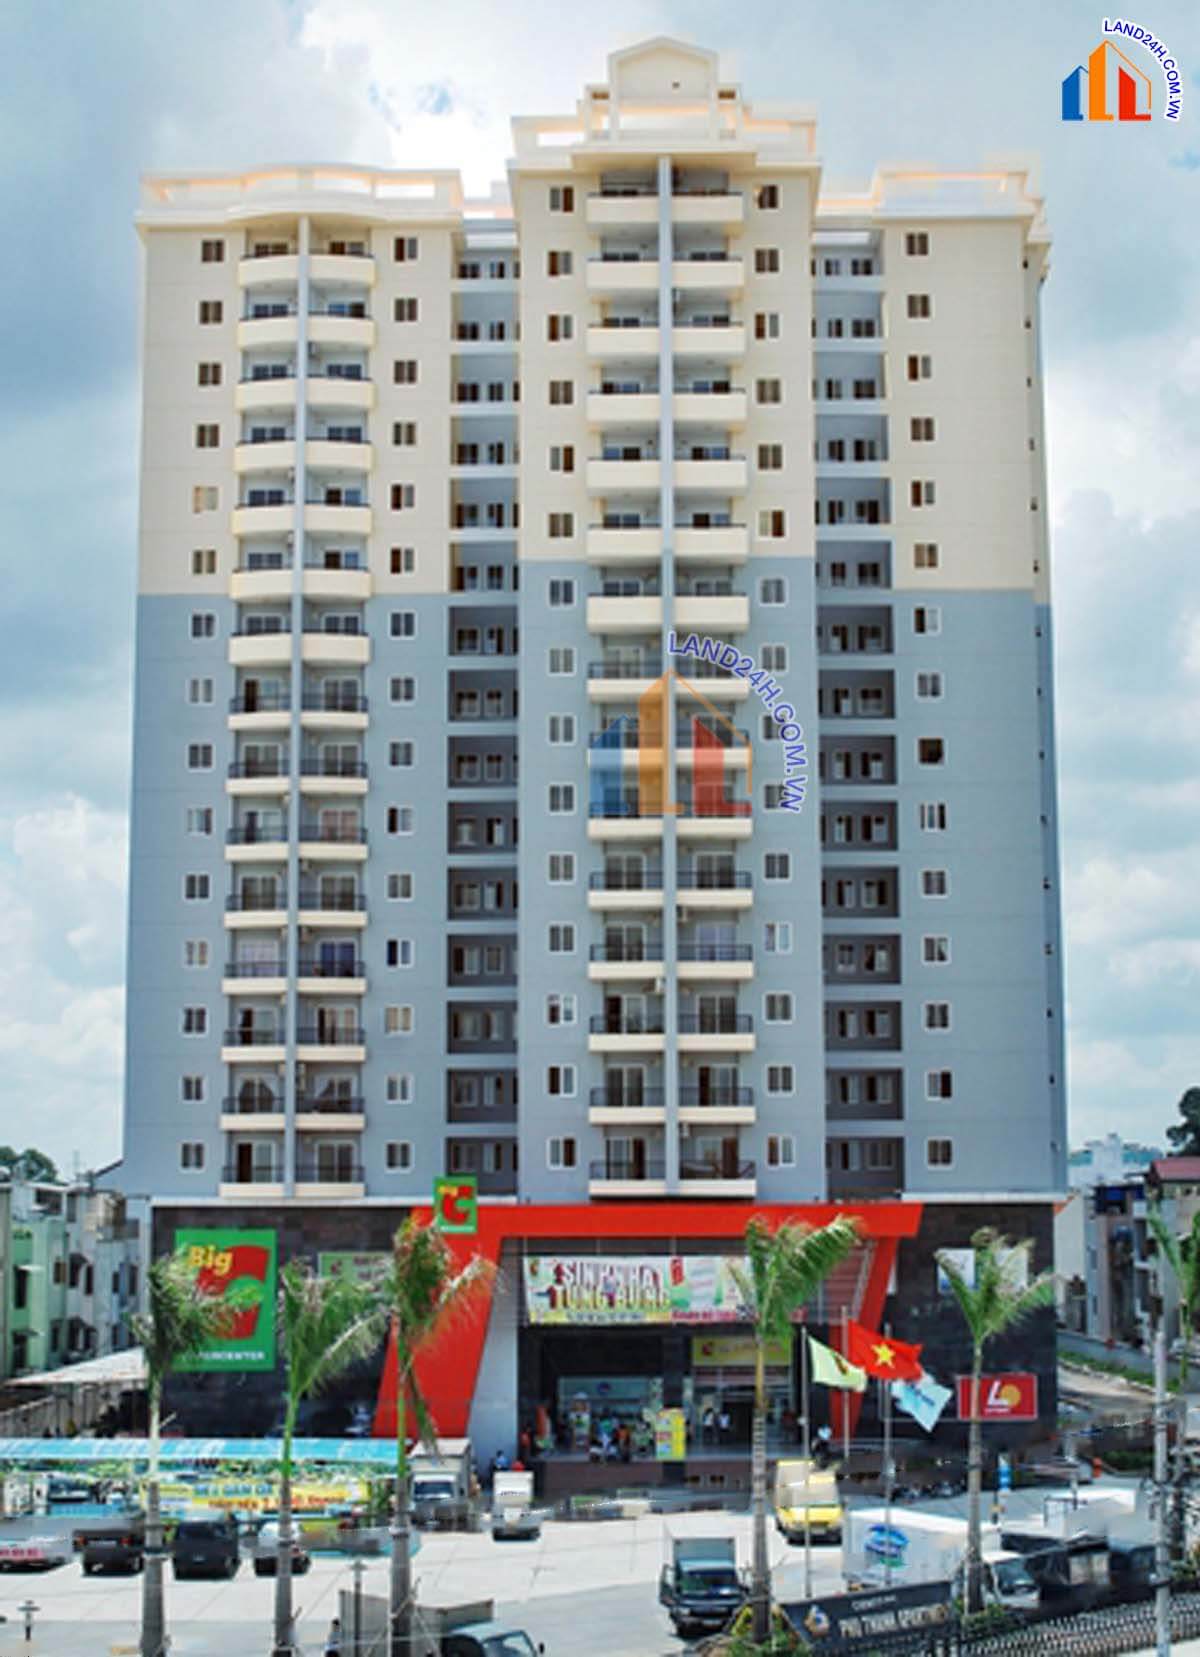 Giá bán chung cư Phú Thạnh Tân Phú giao dịch từ 21 triệu/m2 – 30 triệu/m2